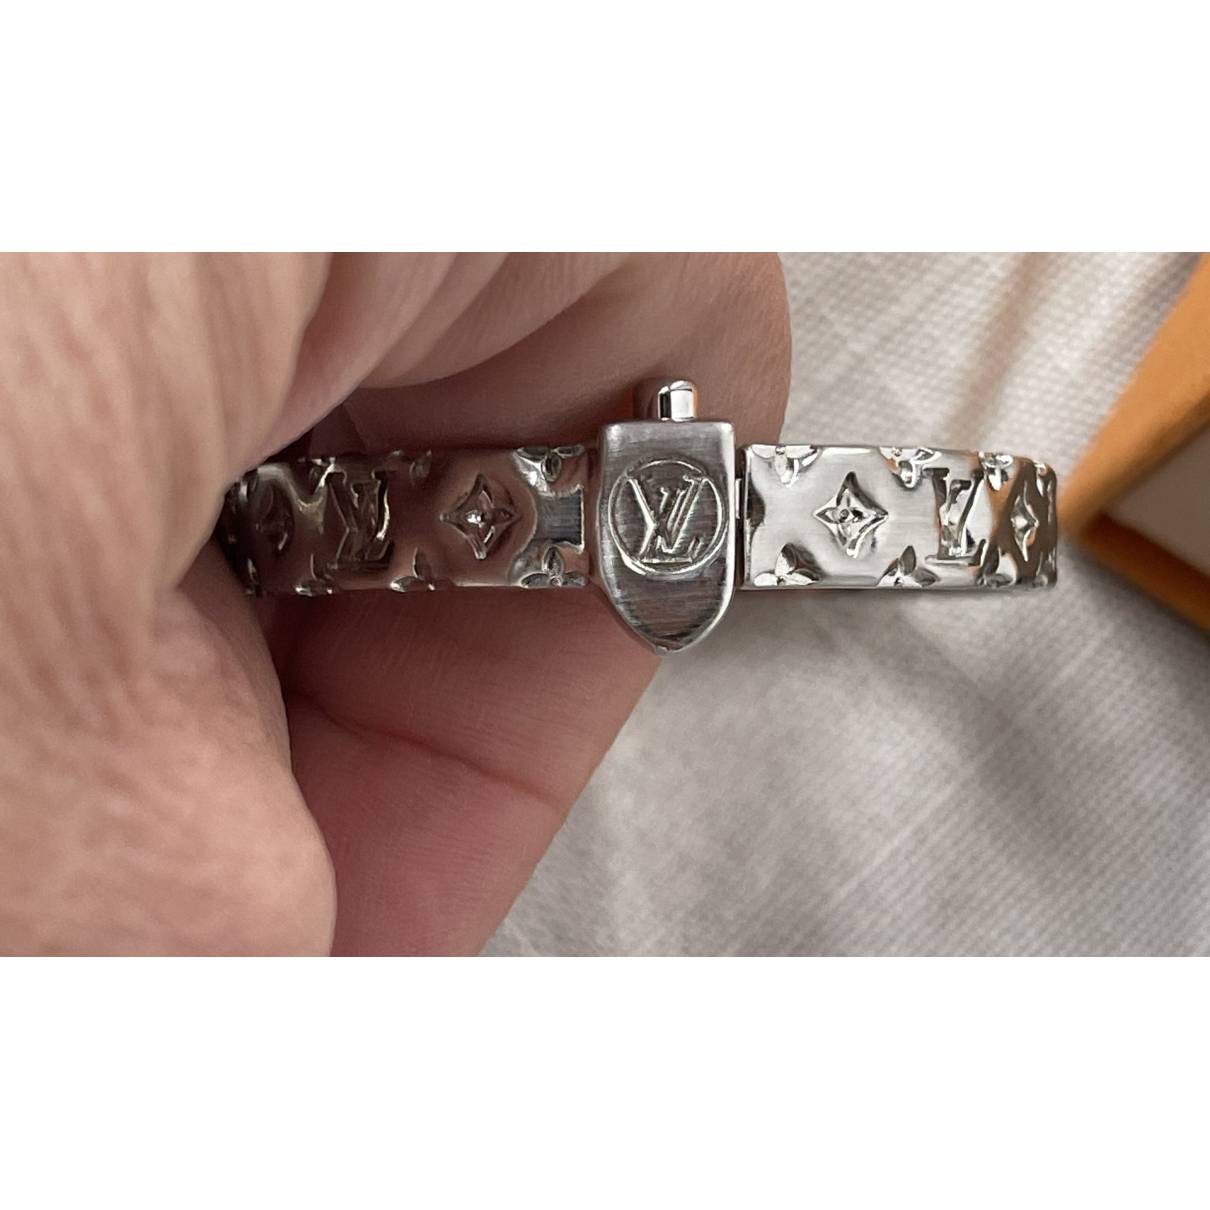 Louis Vuitton Nanogram Bracelet  Rent Louis Vuitton jewelry for $55/month